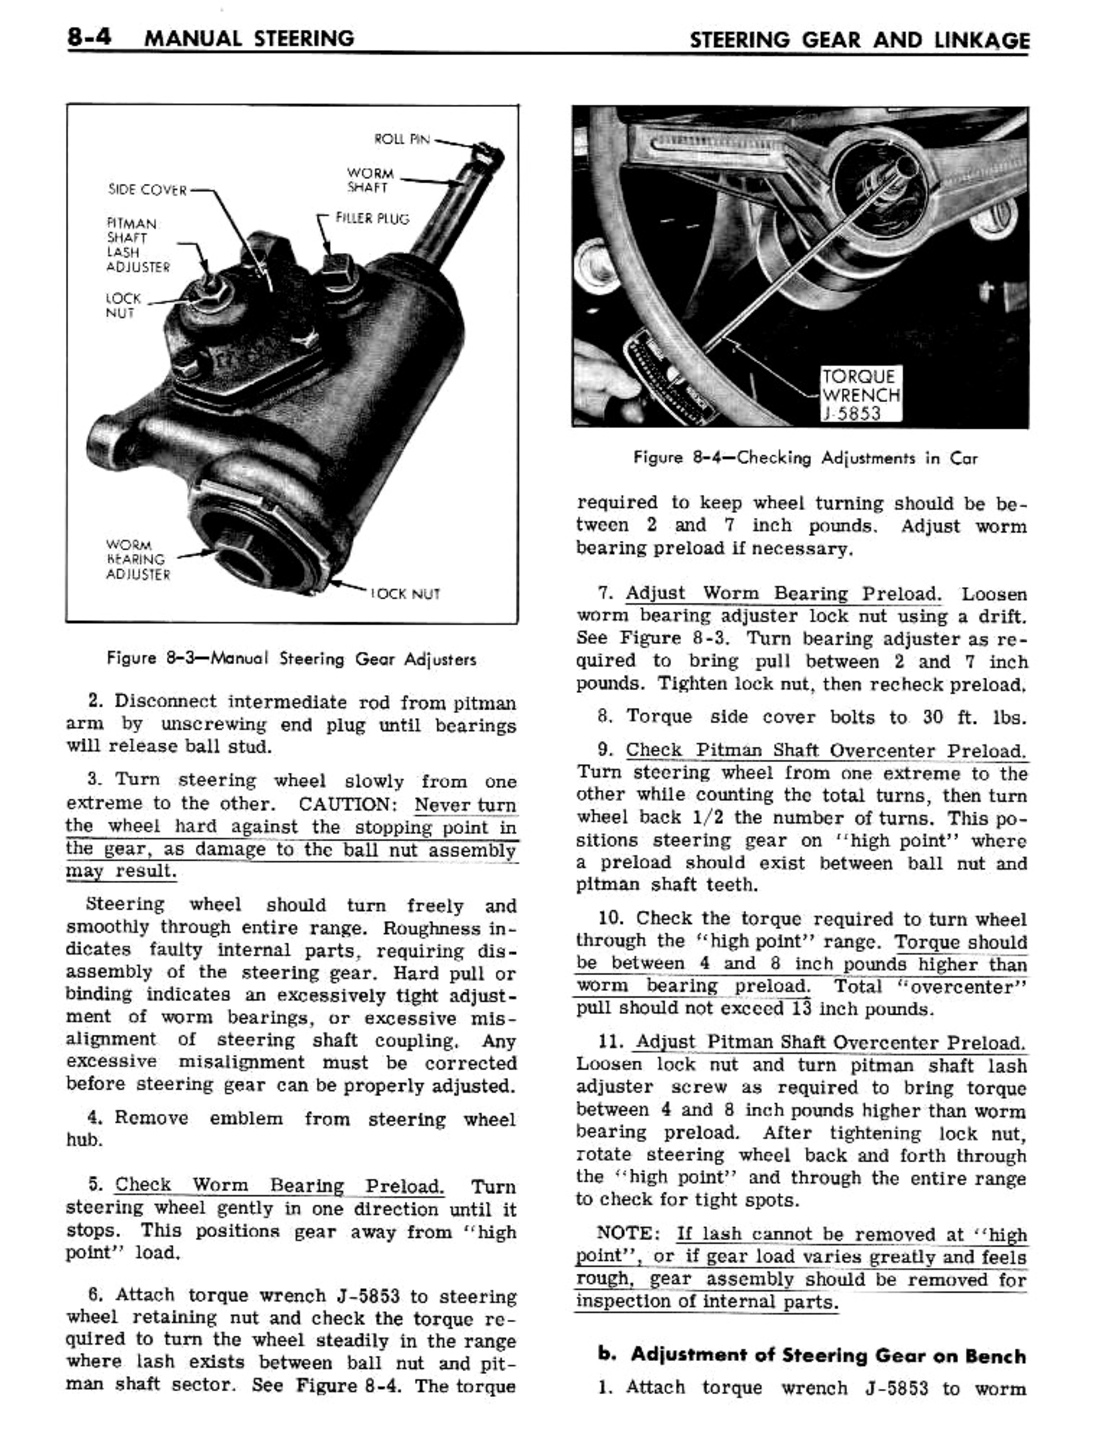 n_08 1961 Buick Shop Manual - Steering-004-004.jpg